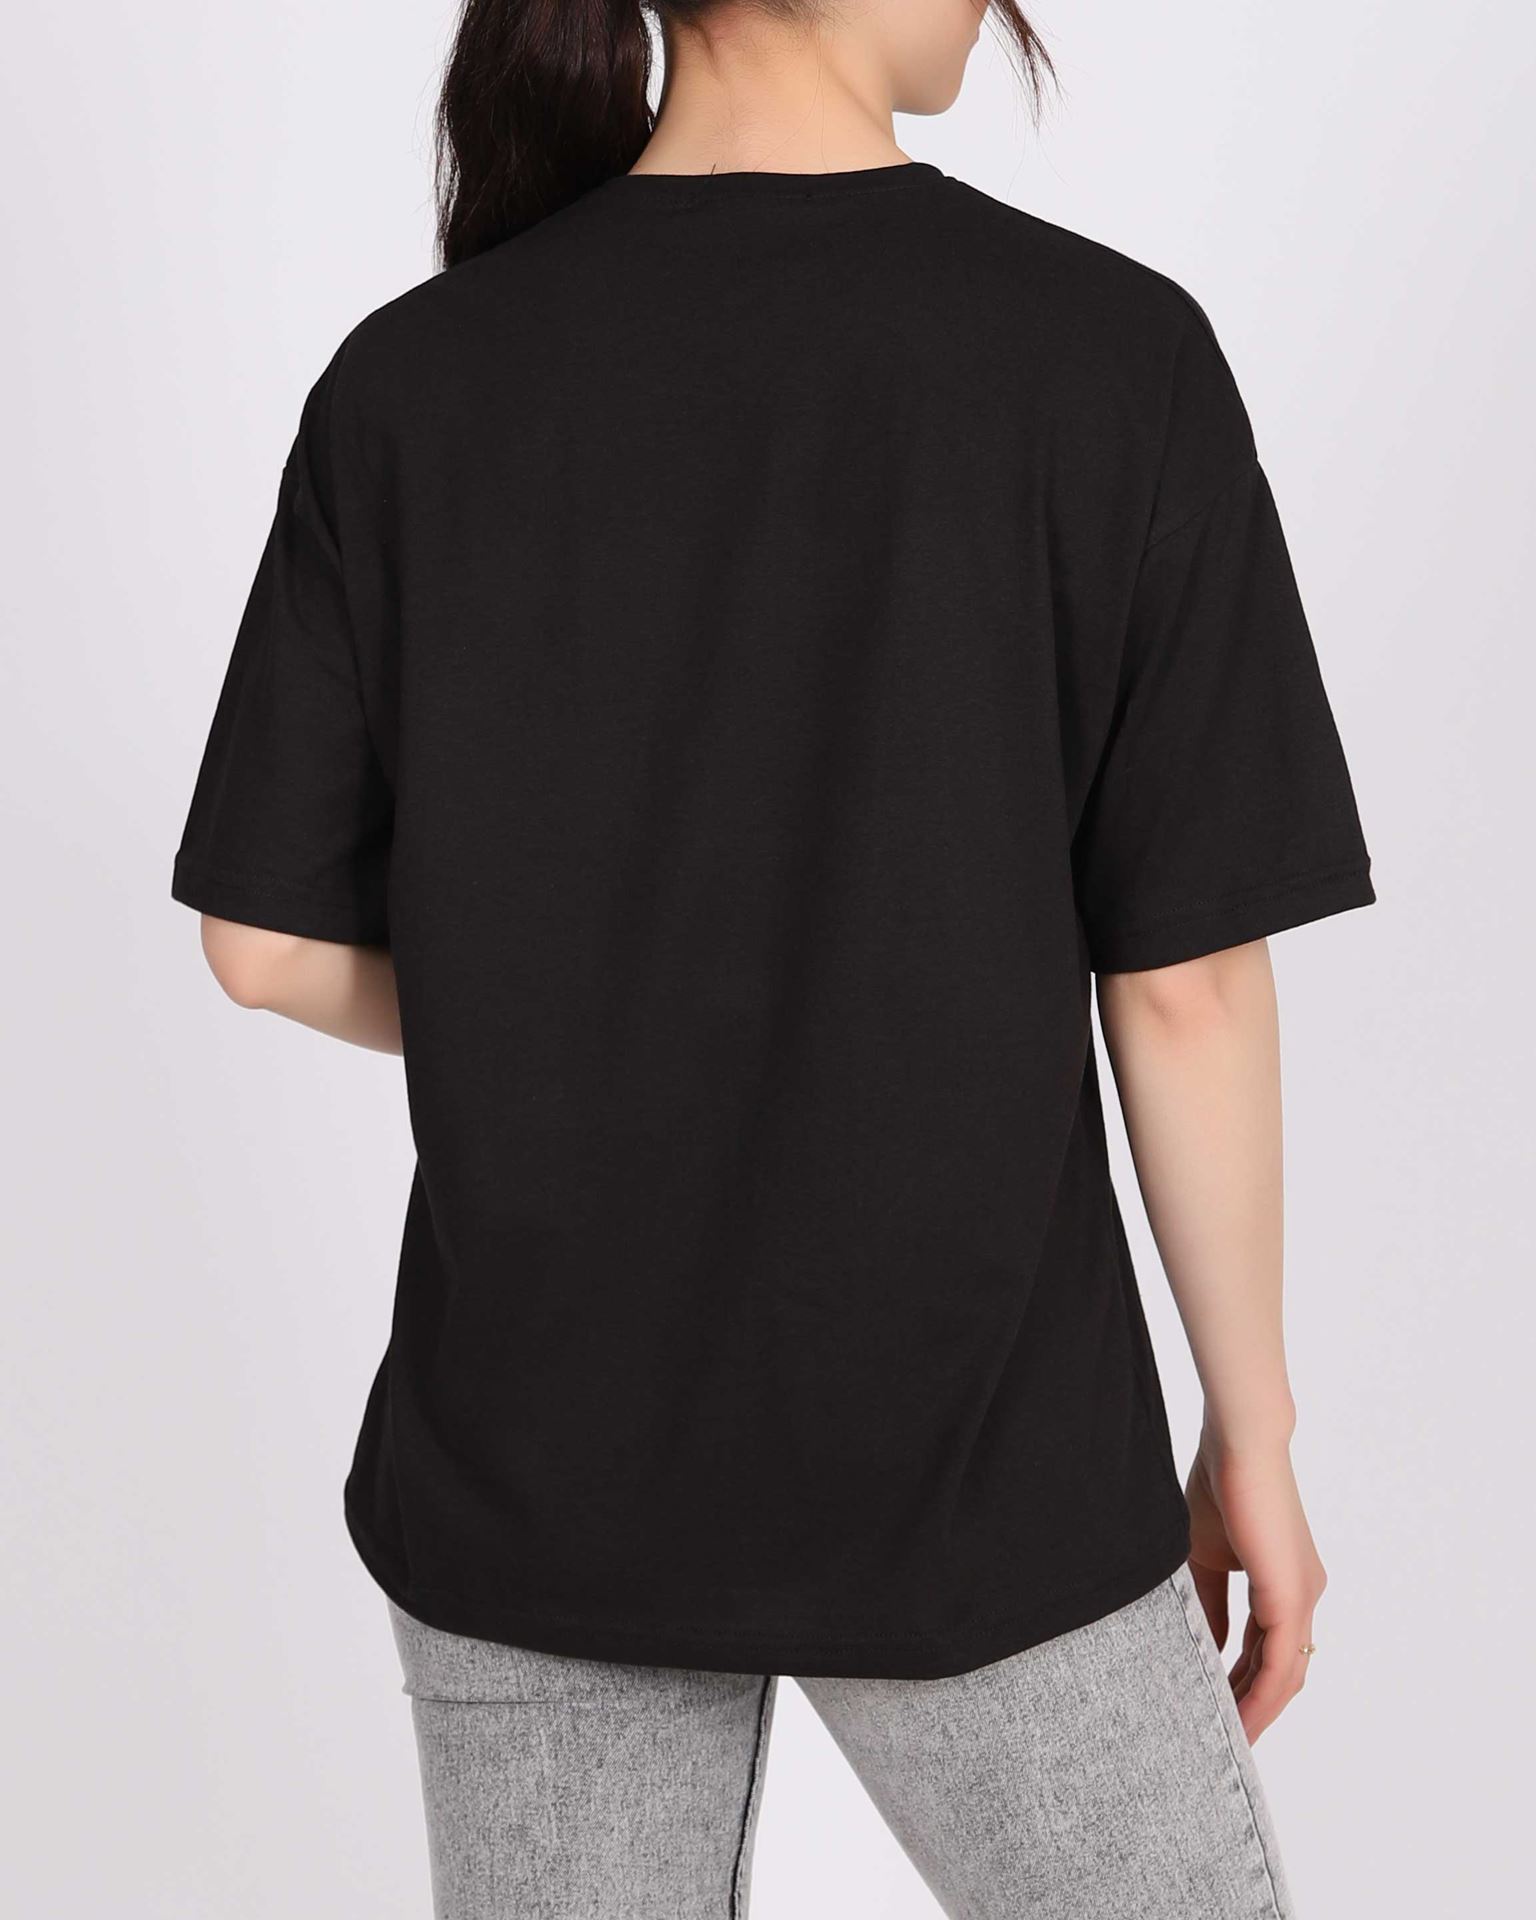 Siyah Baskılı T-shirt TSH305